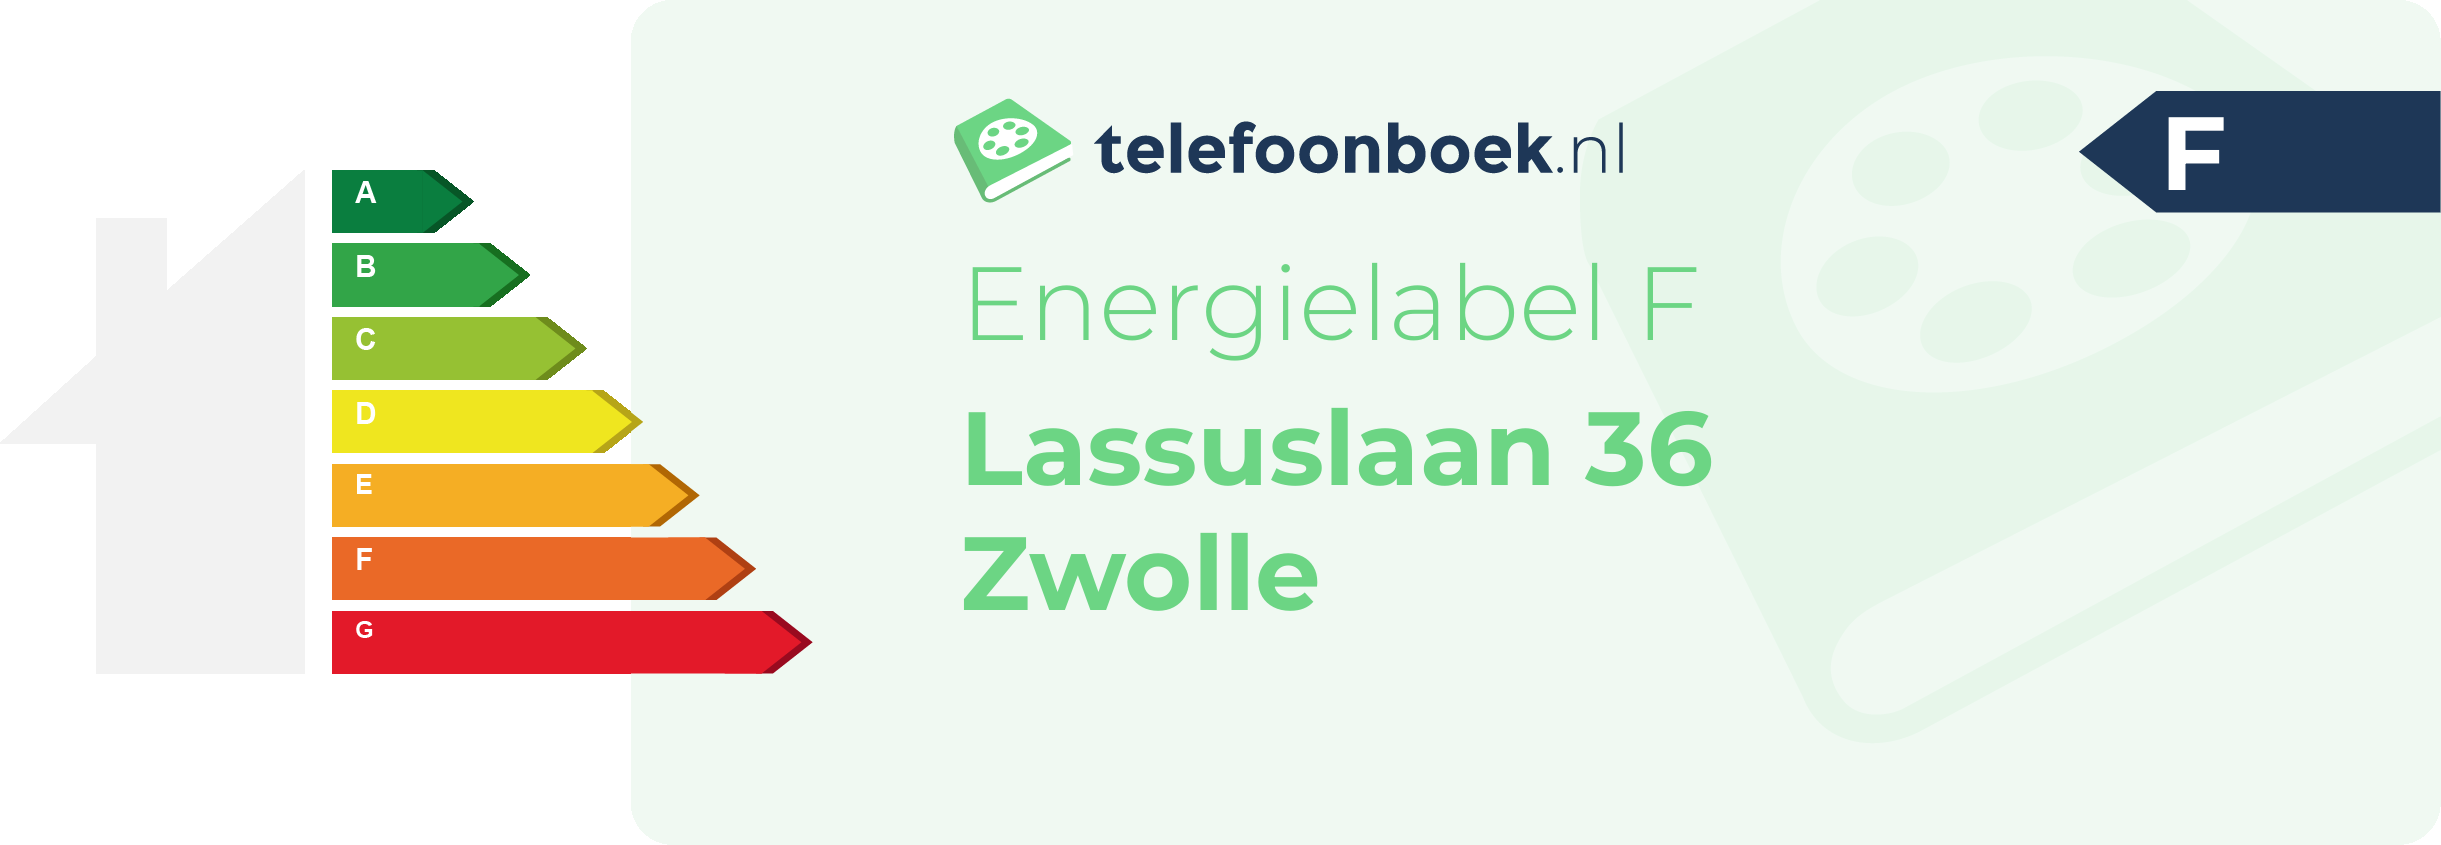 Energielabel Lassuslaan 36 Zwolle